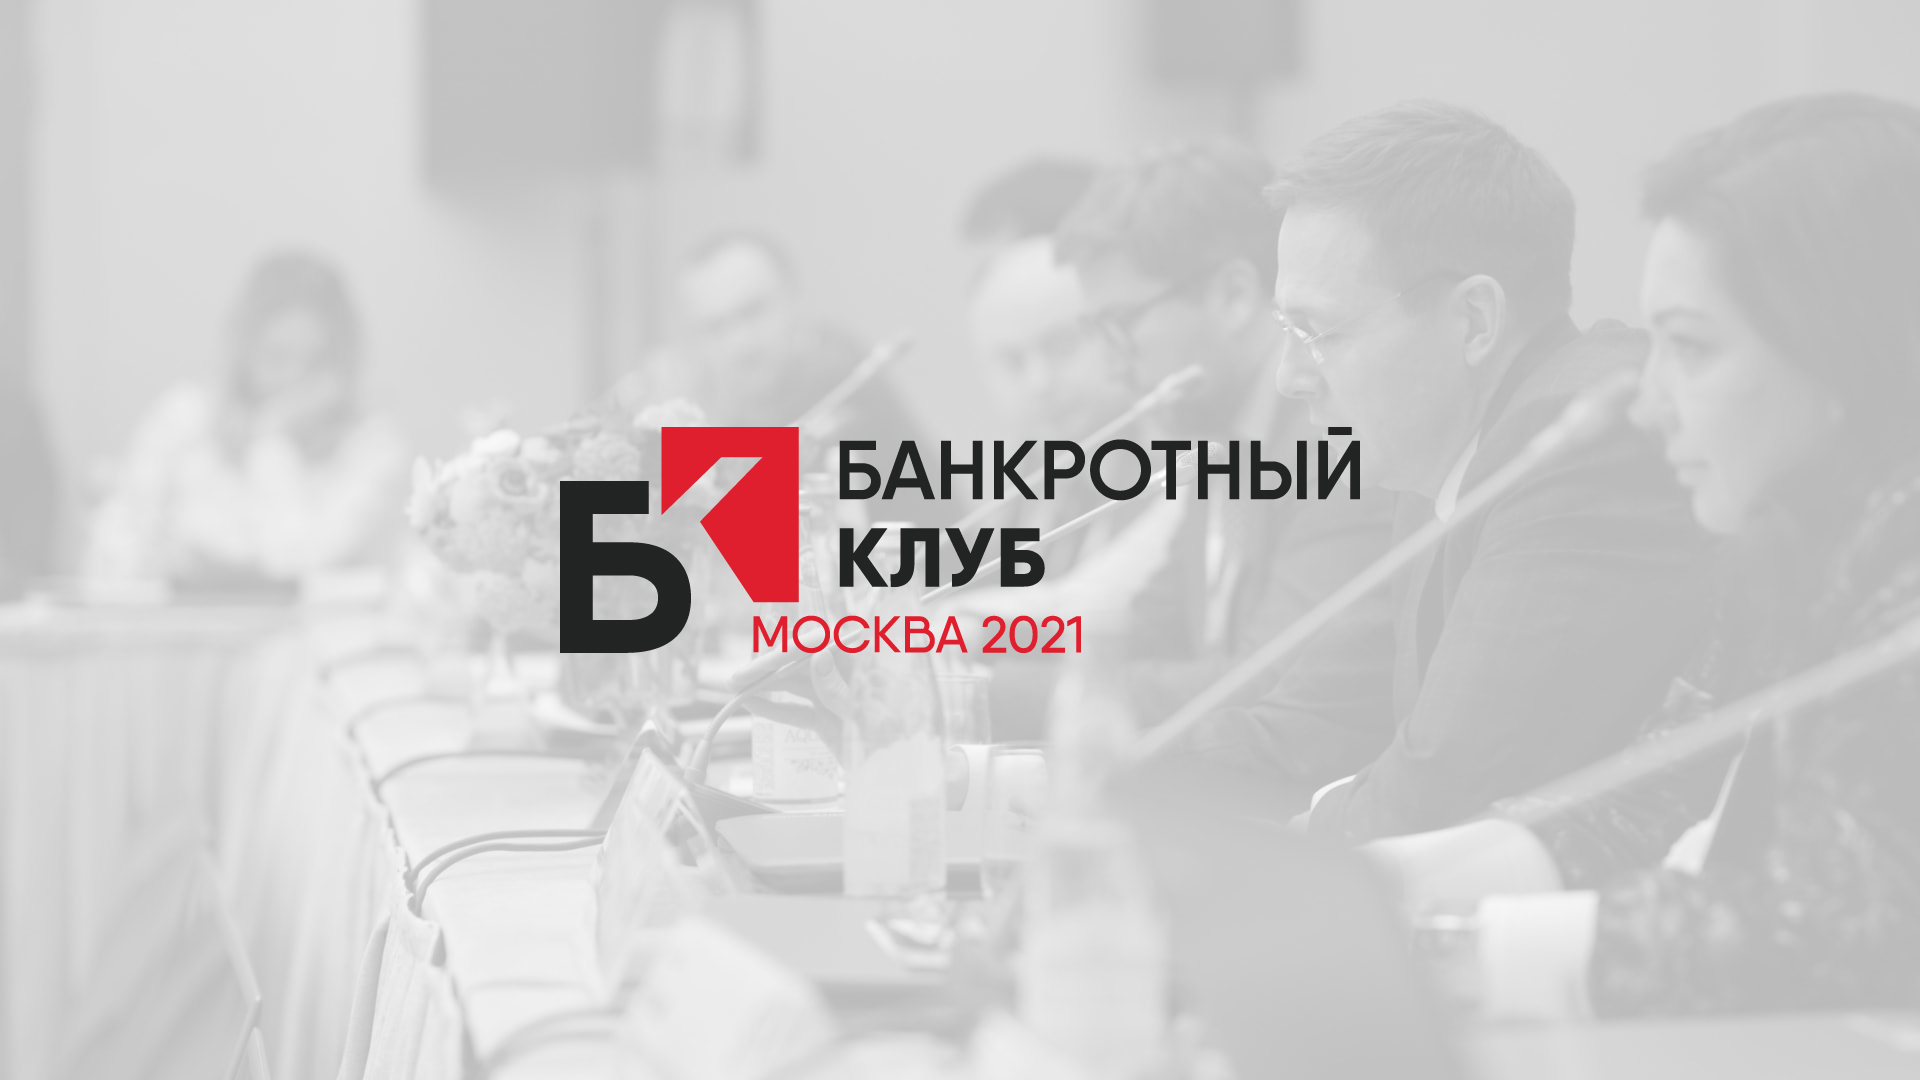 Запись заседания Банкротного клуба в г.Москва 2021